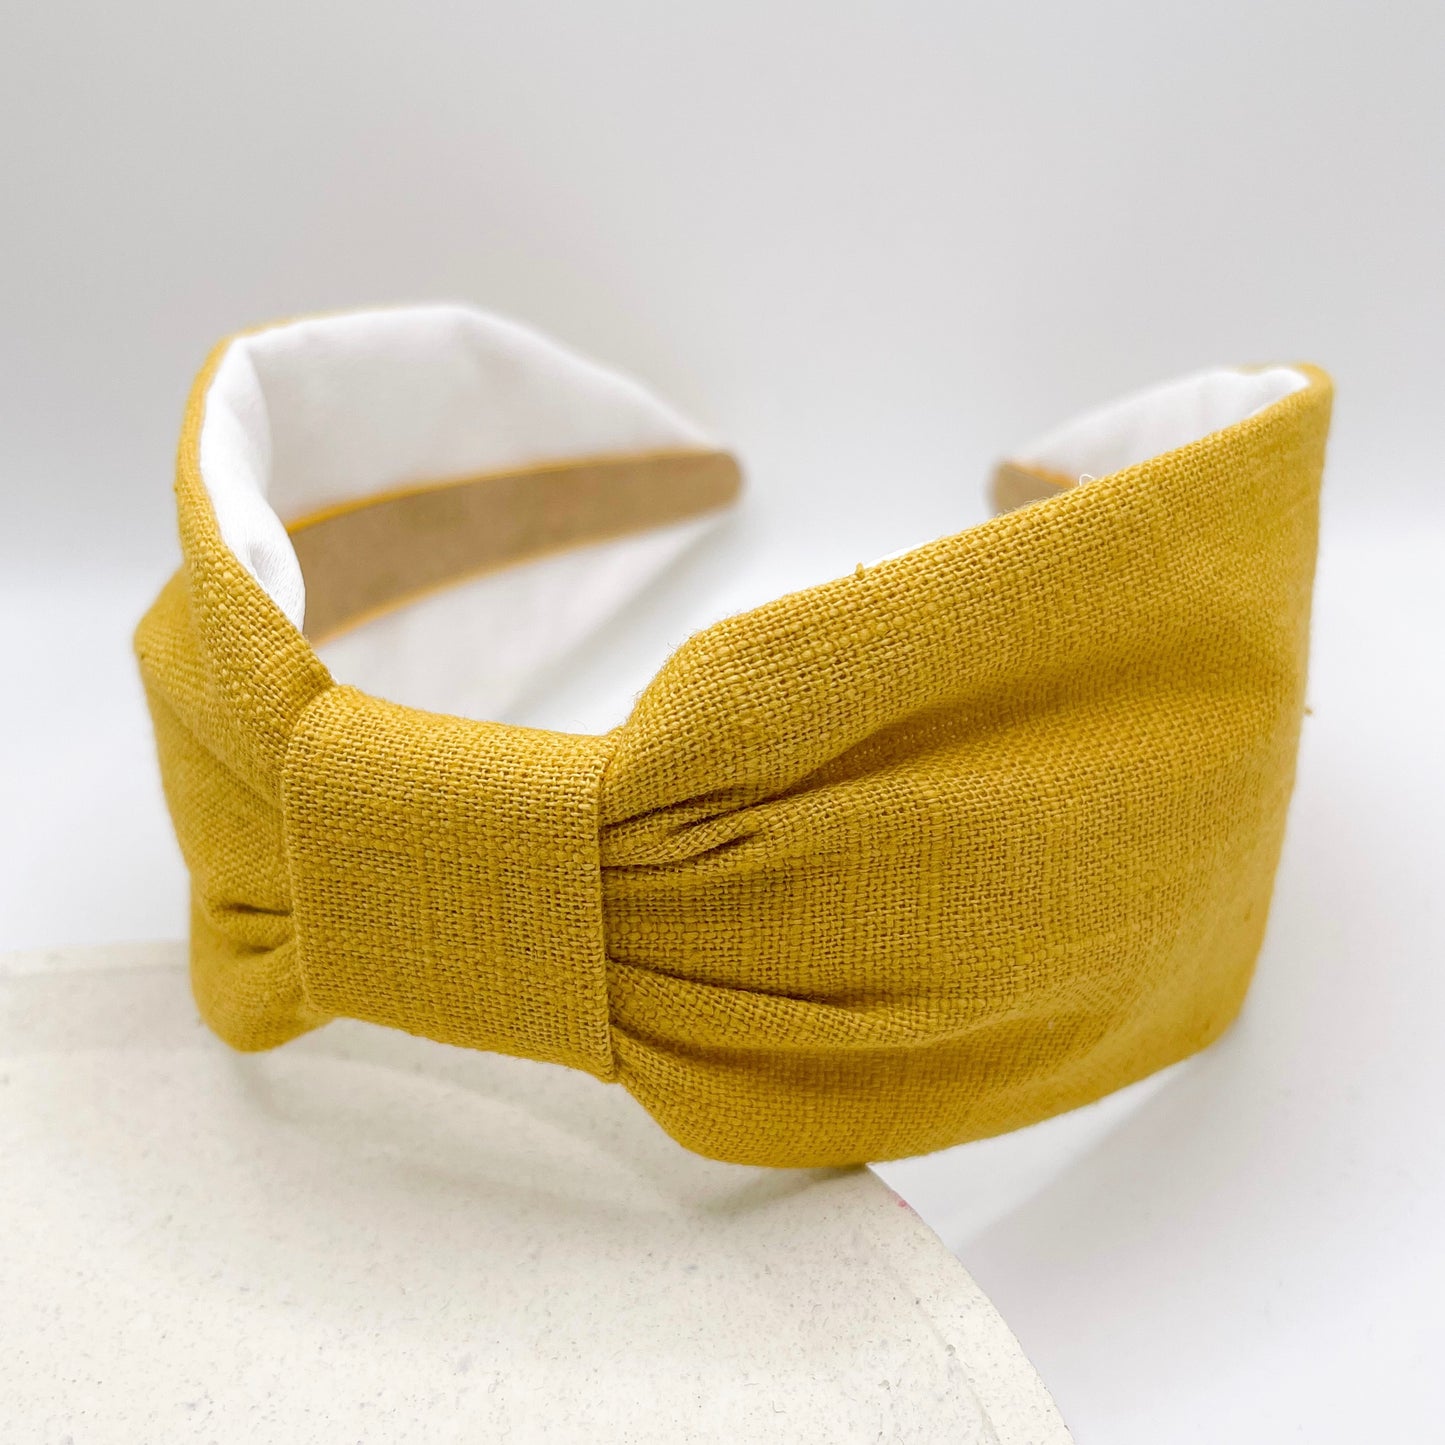 Bow headband, wide headband for curly hair, yellow bright headband